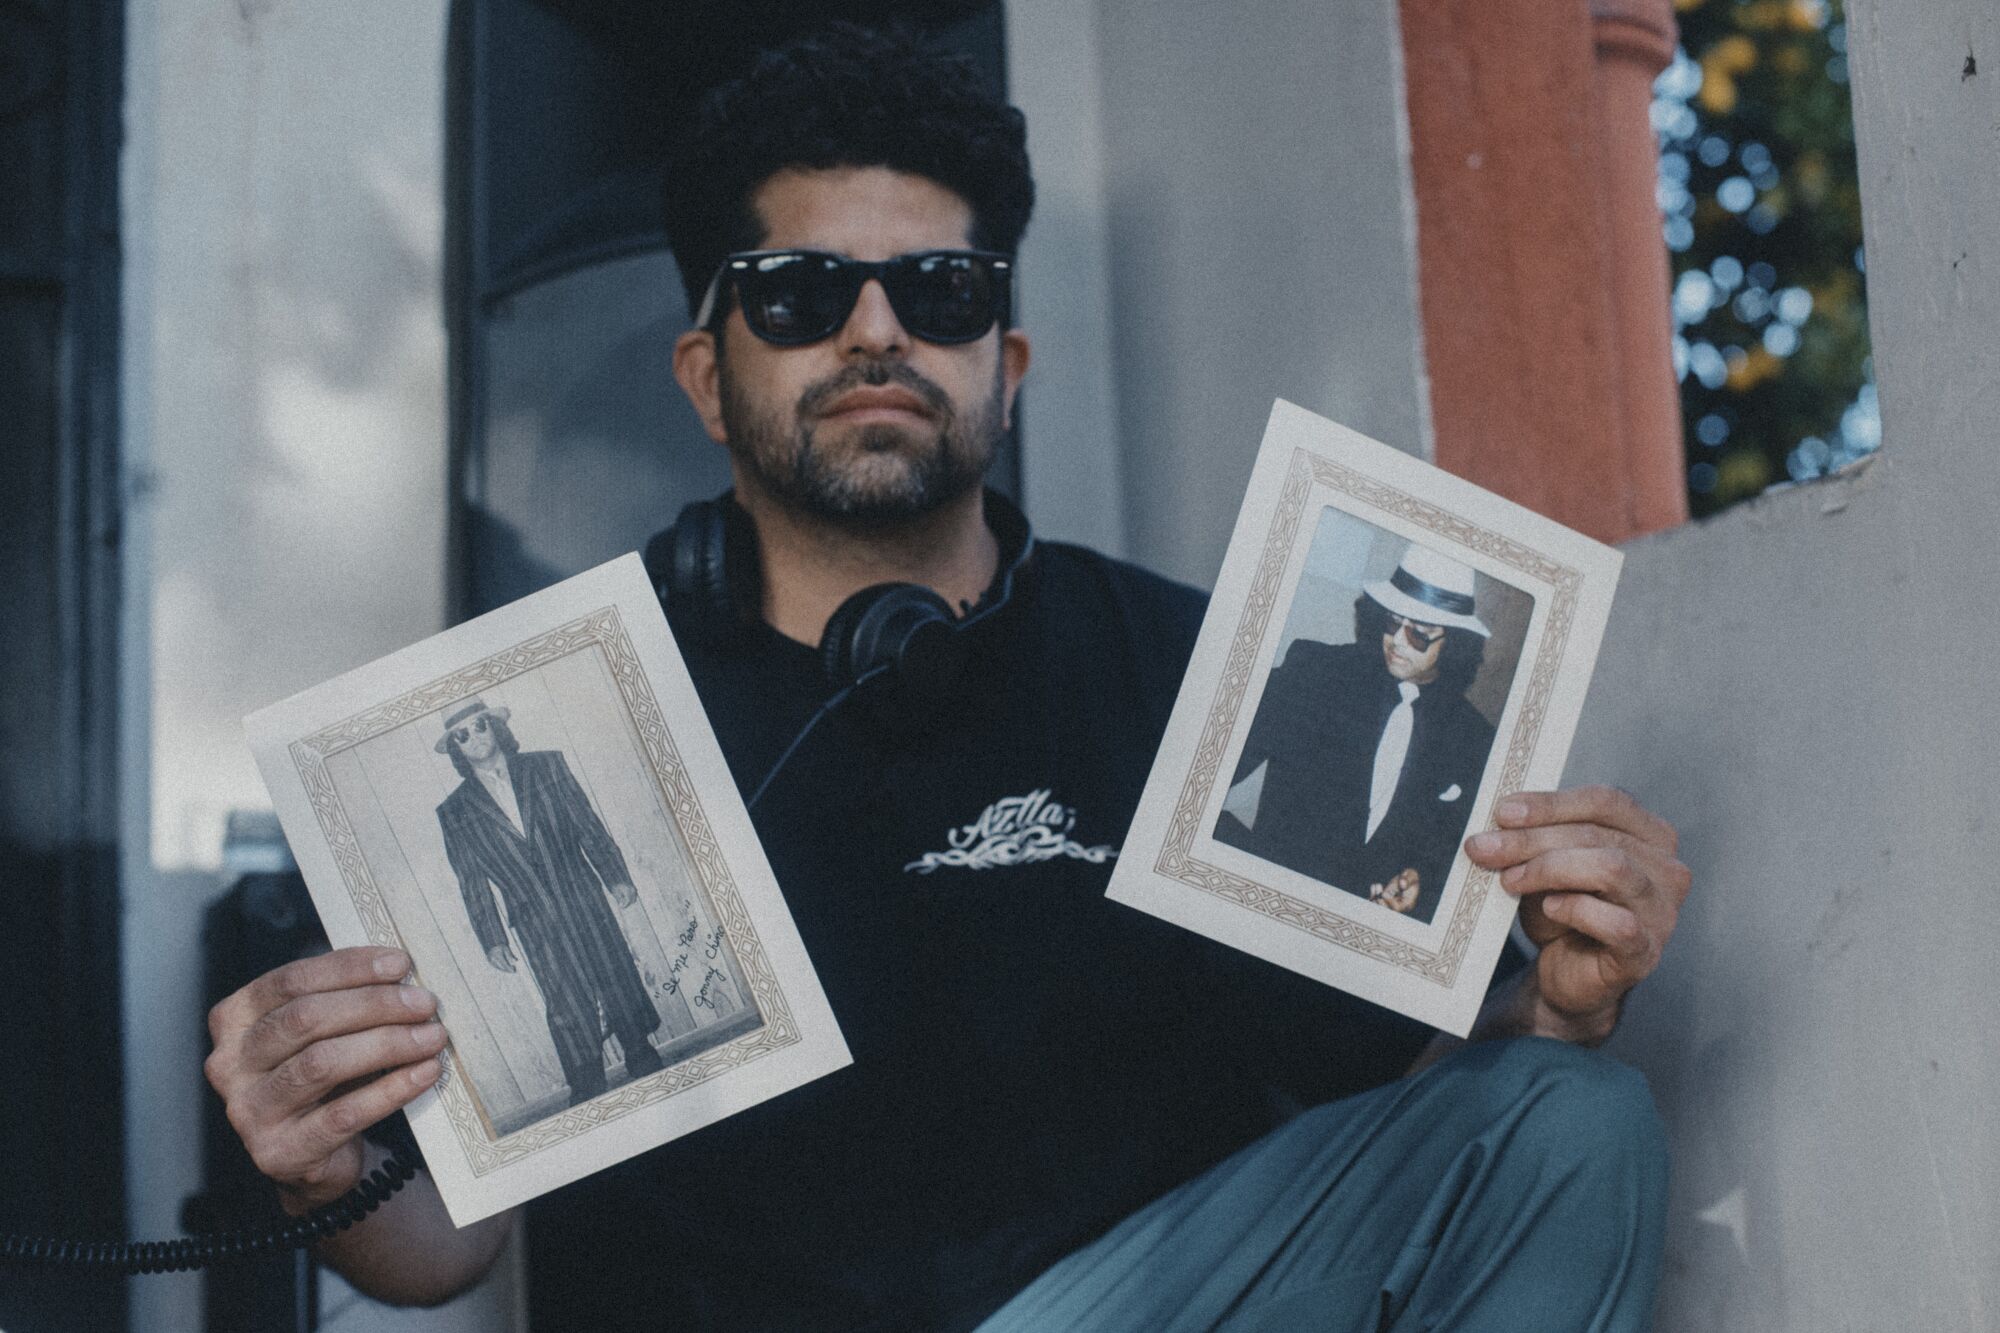 Artist, DJ Gary "Ganas" Garay holds photos of Jonny Chingas, the late L.A. legend.